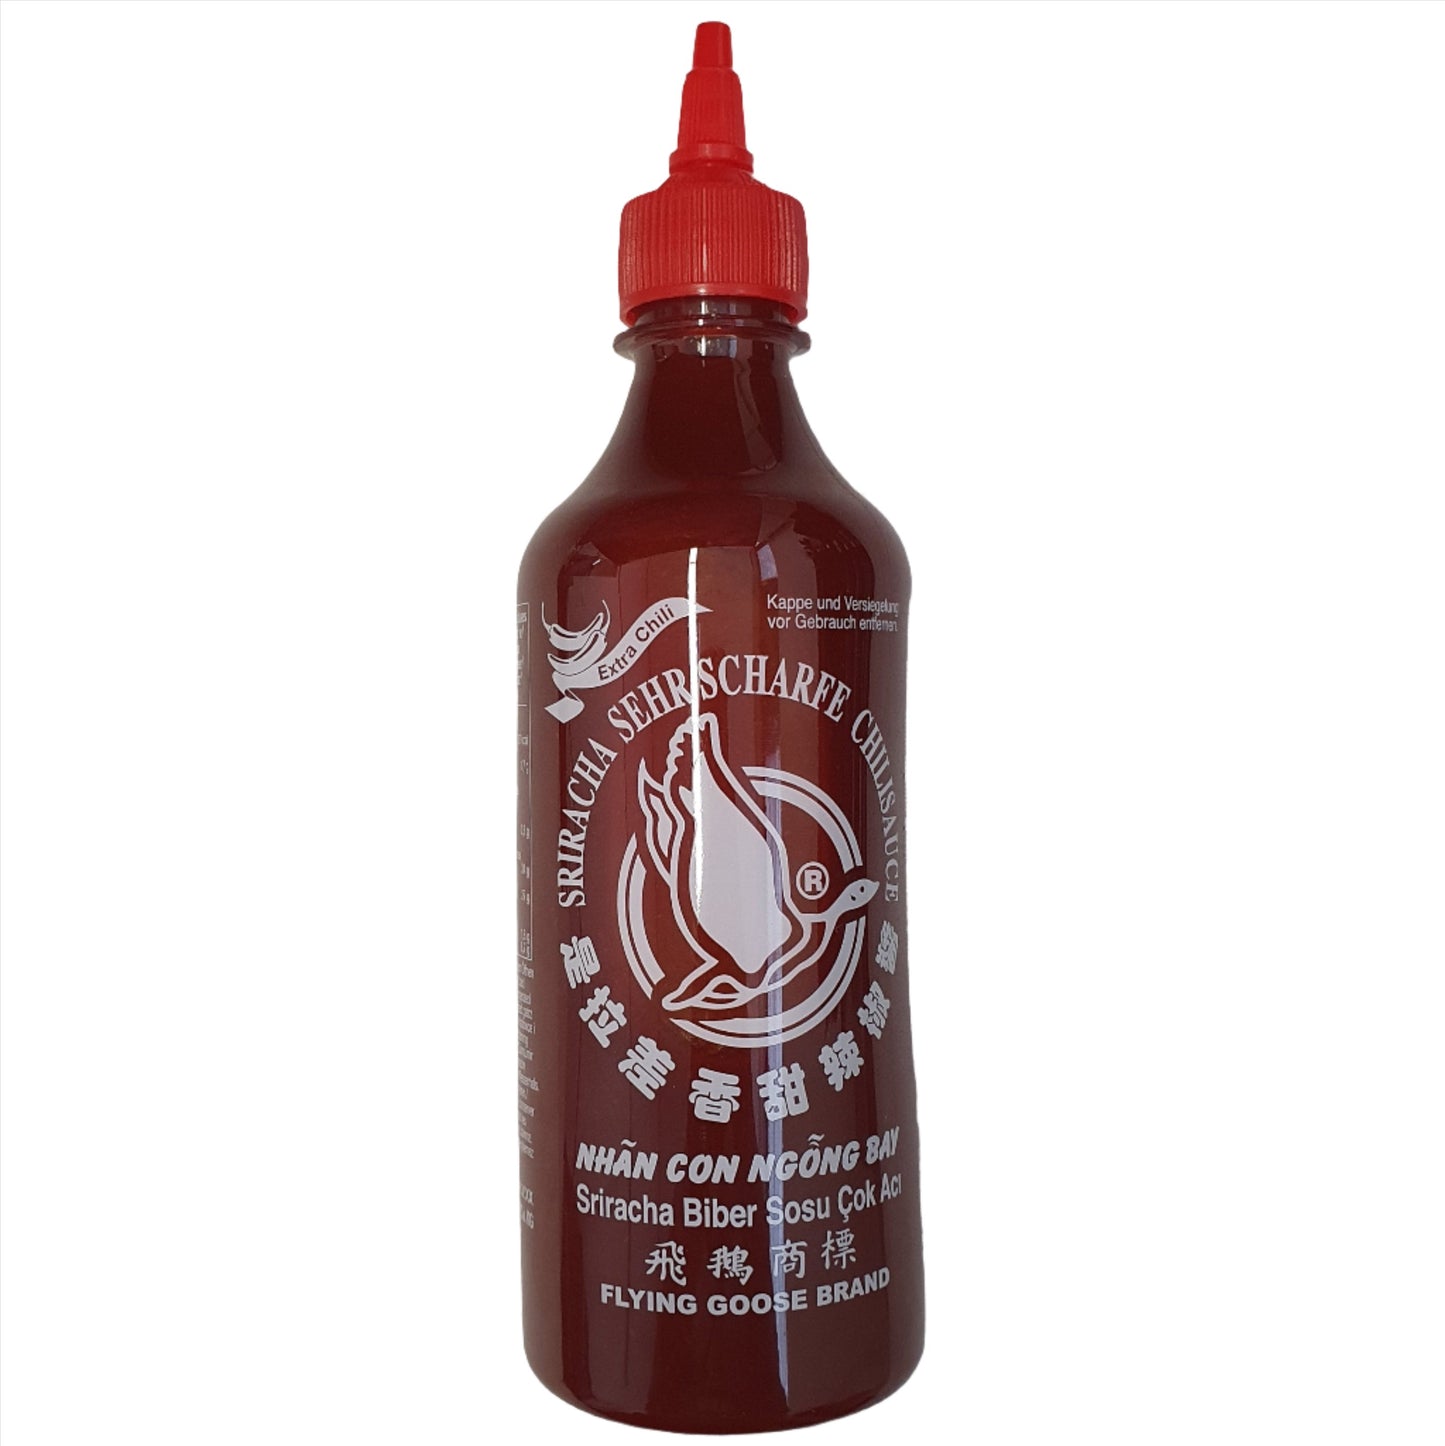 Flying Goose Sriracha sehr scharf 455ml - Worldster Markt e.K.